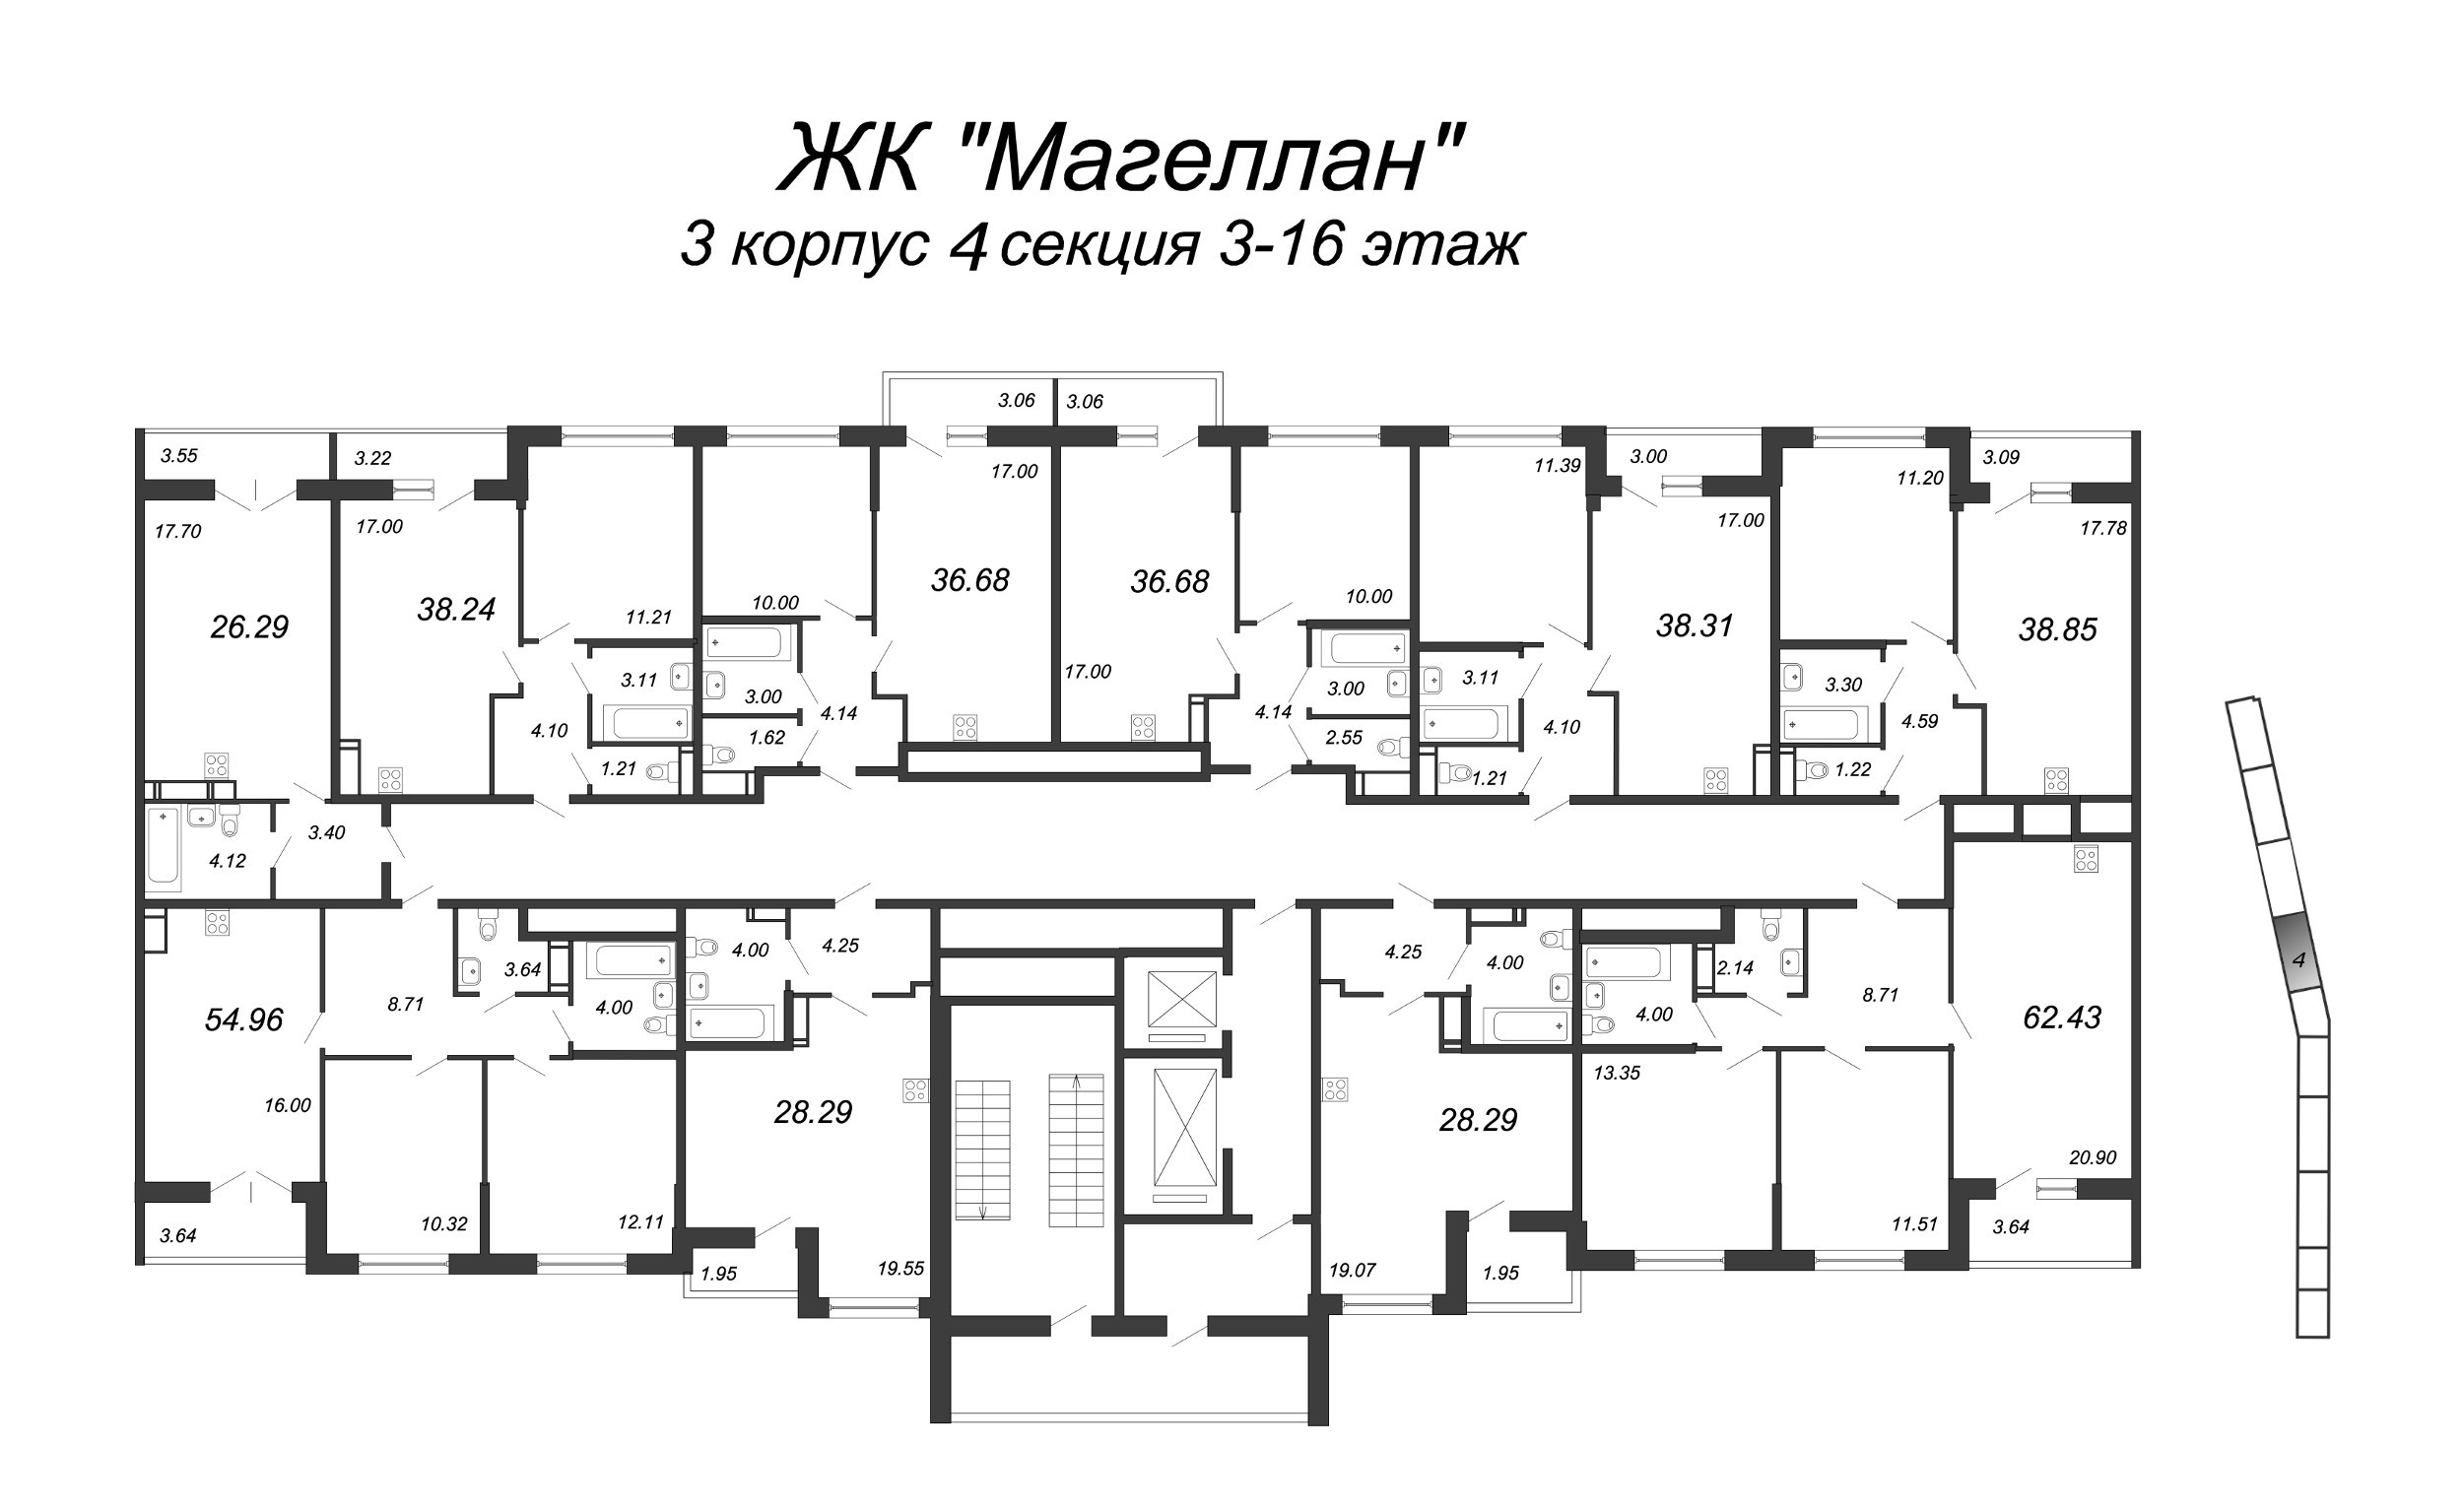 2-комнатная (Евро) квартира, 39.2 м² в ЖК "Магеллан" - планировка этажа